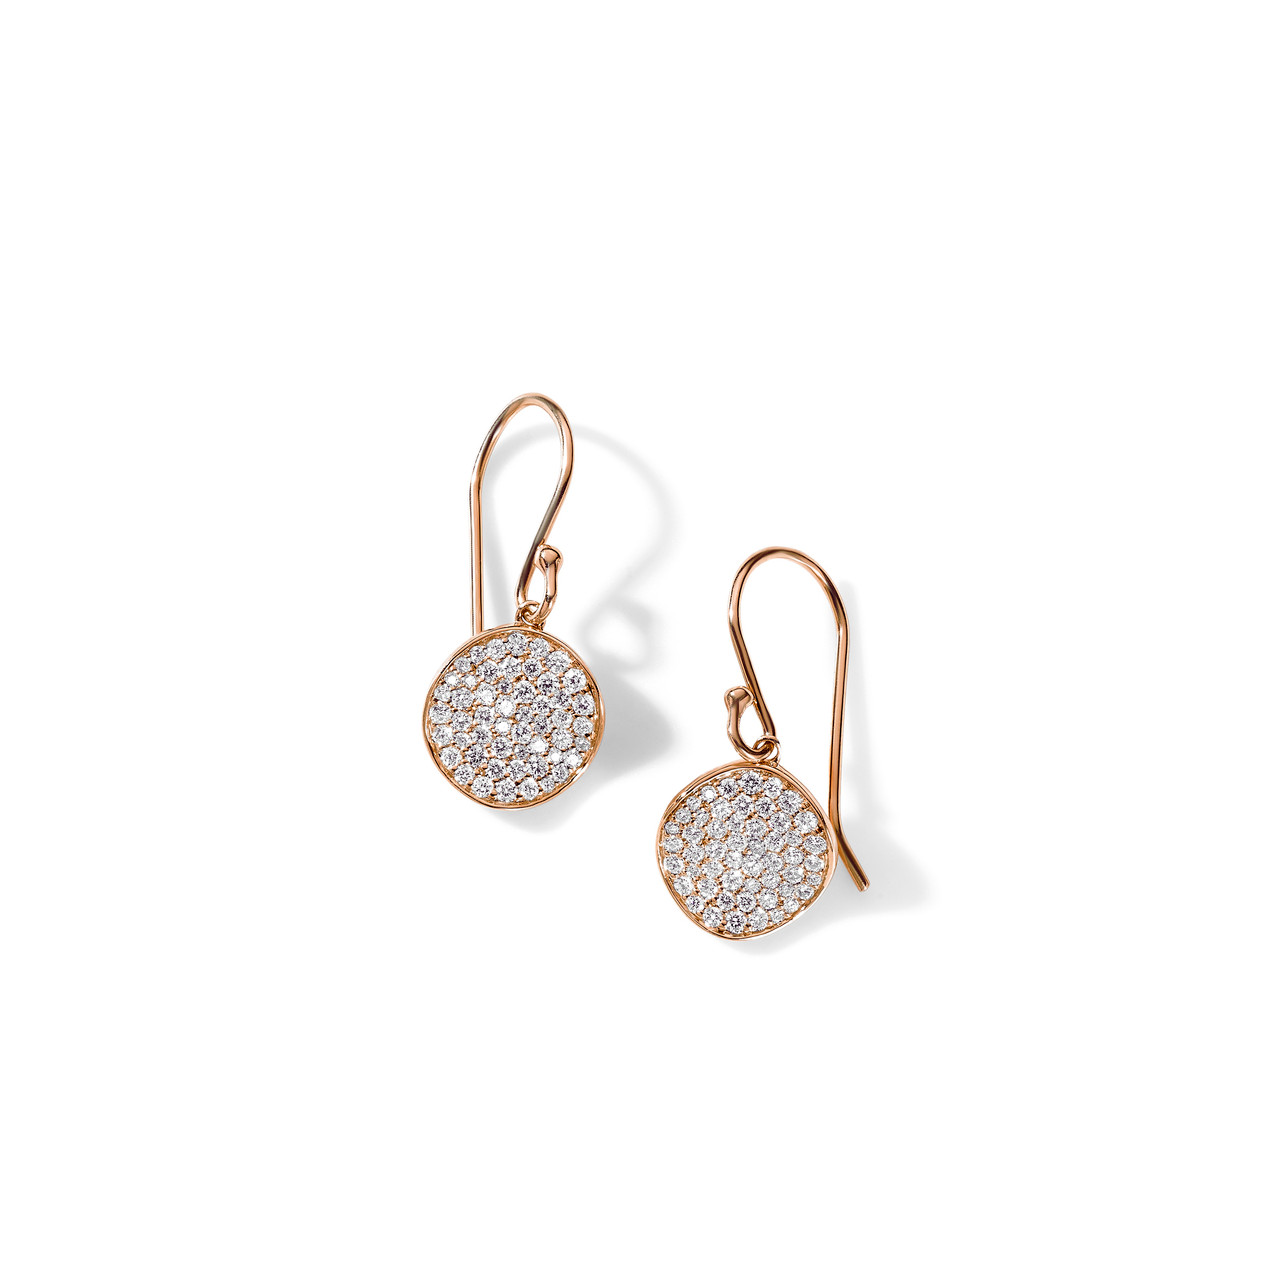 Share more than 252 rose gold diamond earrings best